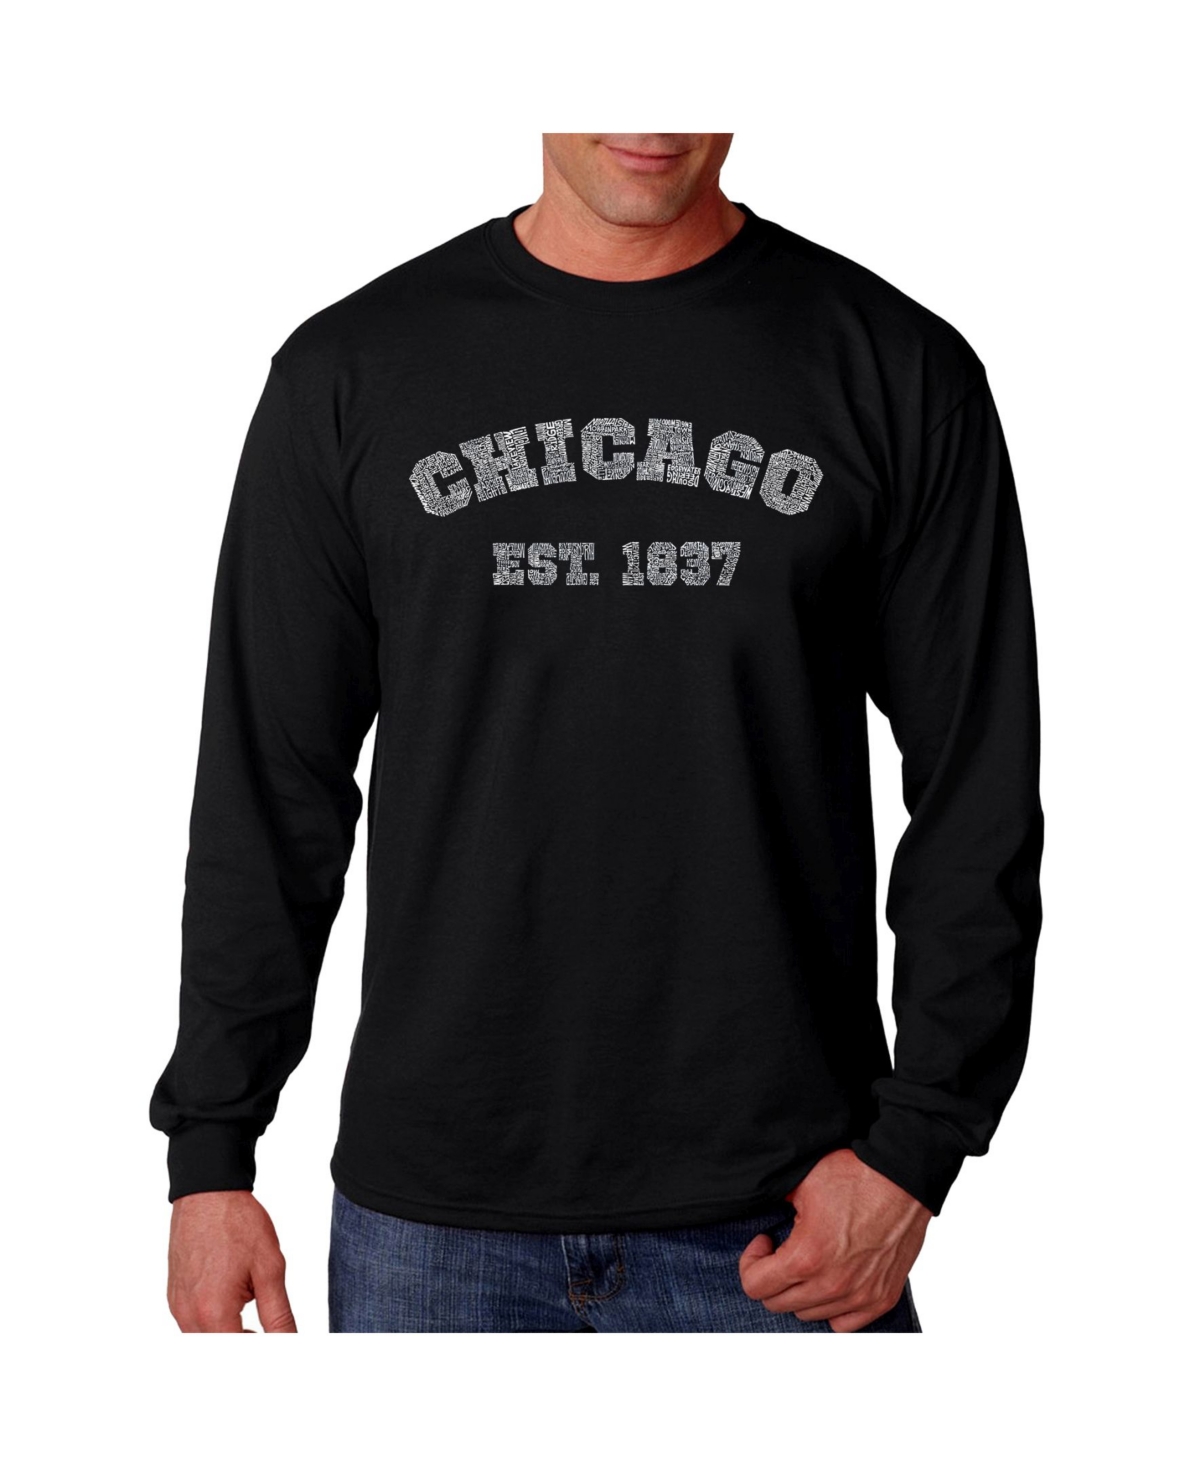 Men's Word Art Long Sleeve T-Shirt - Chicago 1837 - Black